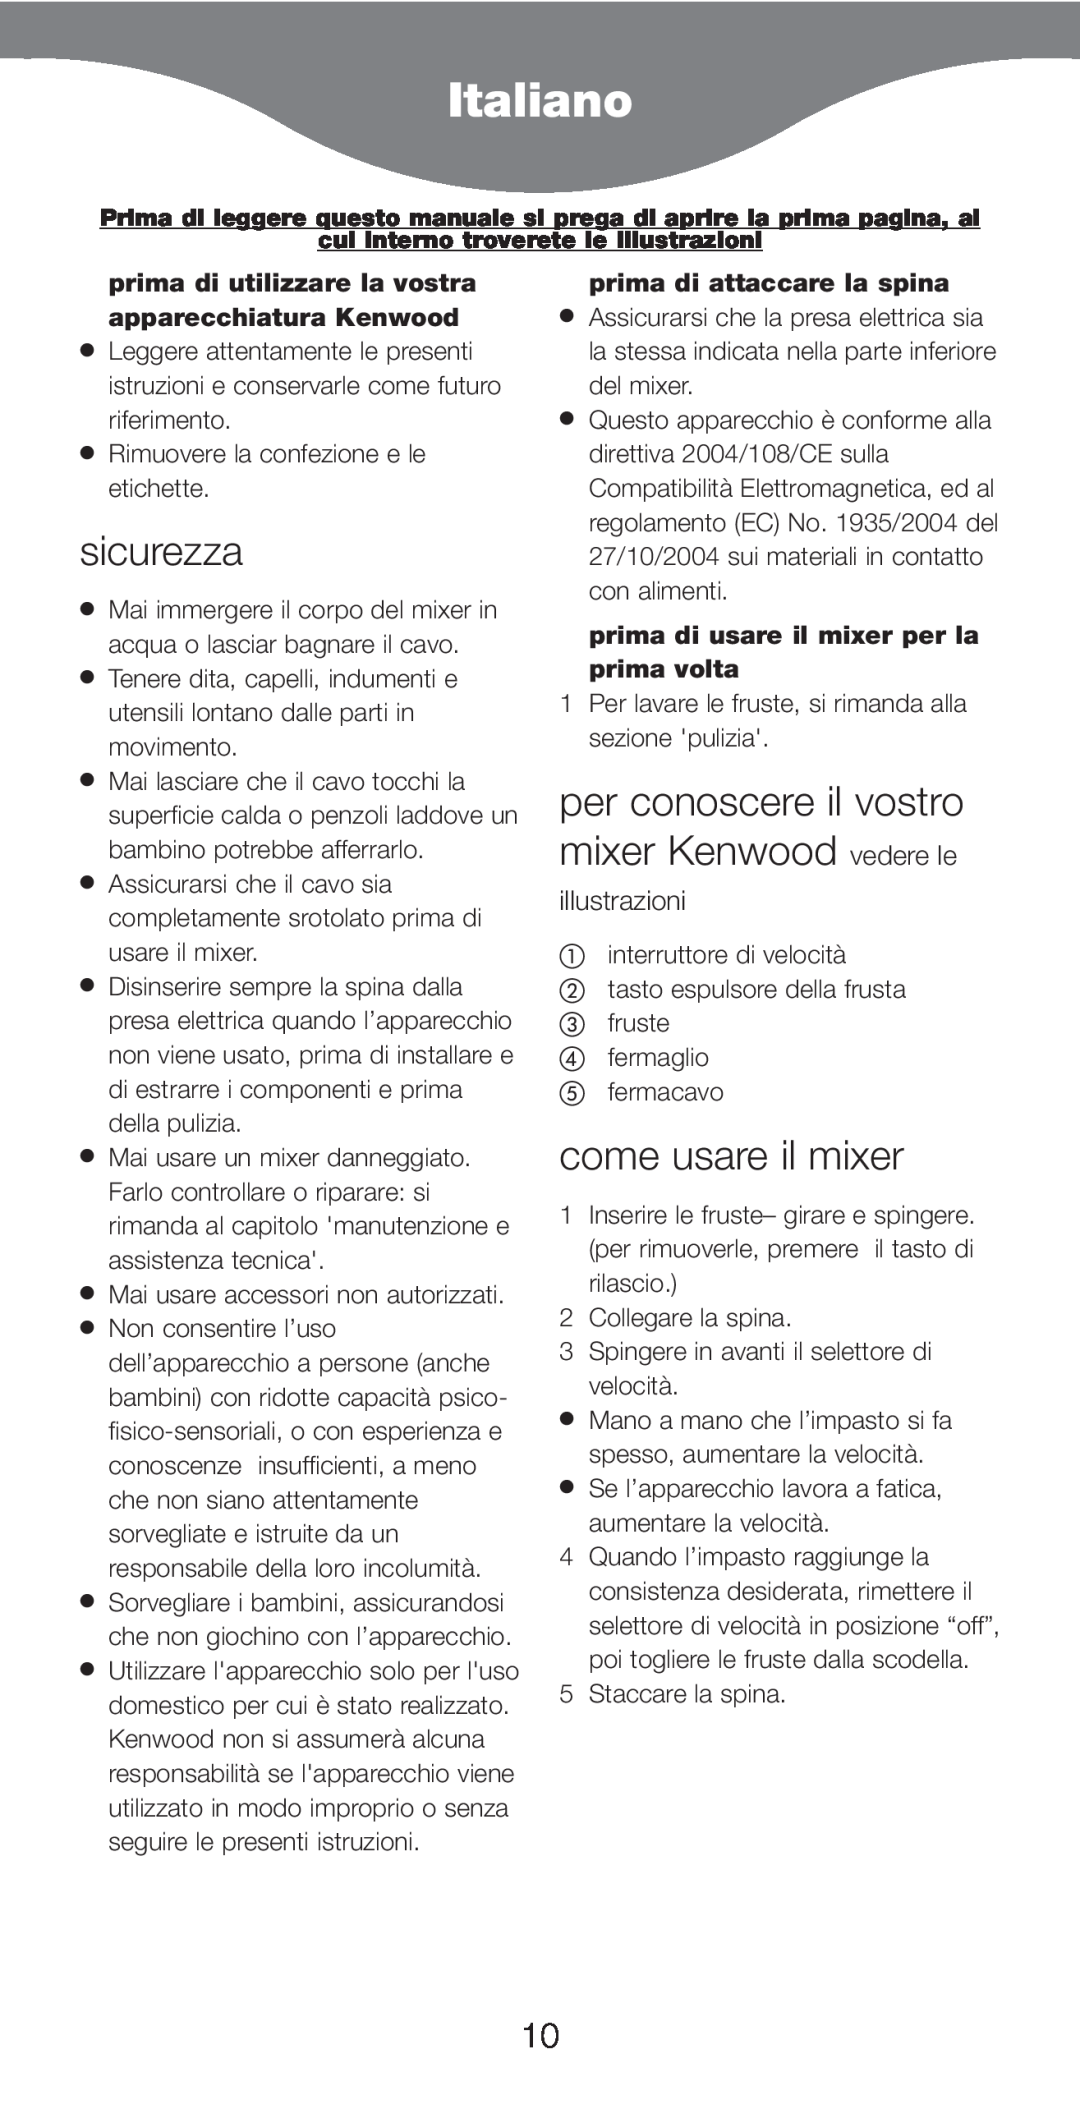 Kenwood HM226 Italiano, sicurezza, per conoscere il vostro mixer Kenwood vedere le, come usare il mixer, illustrazioni 